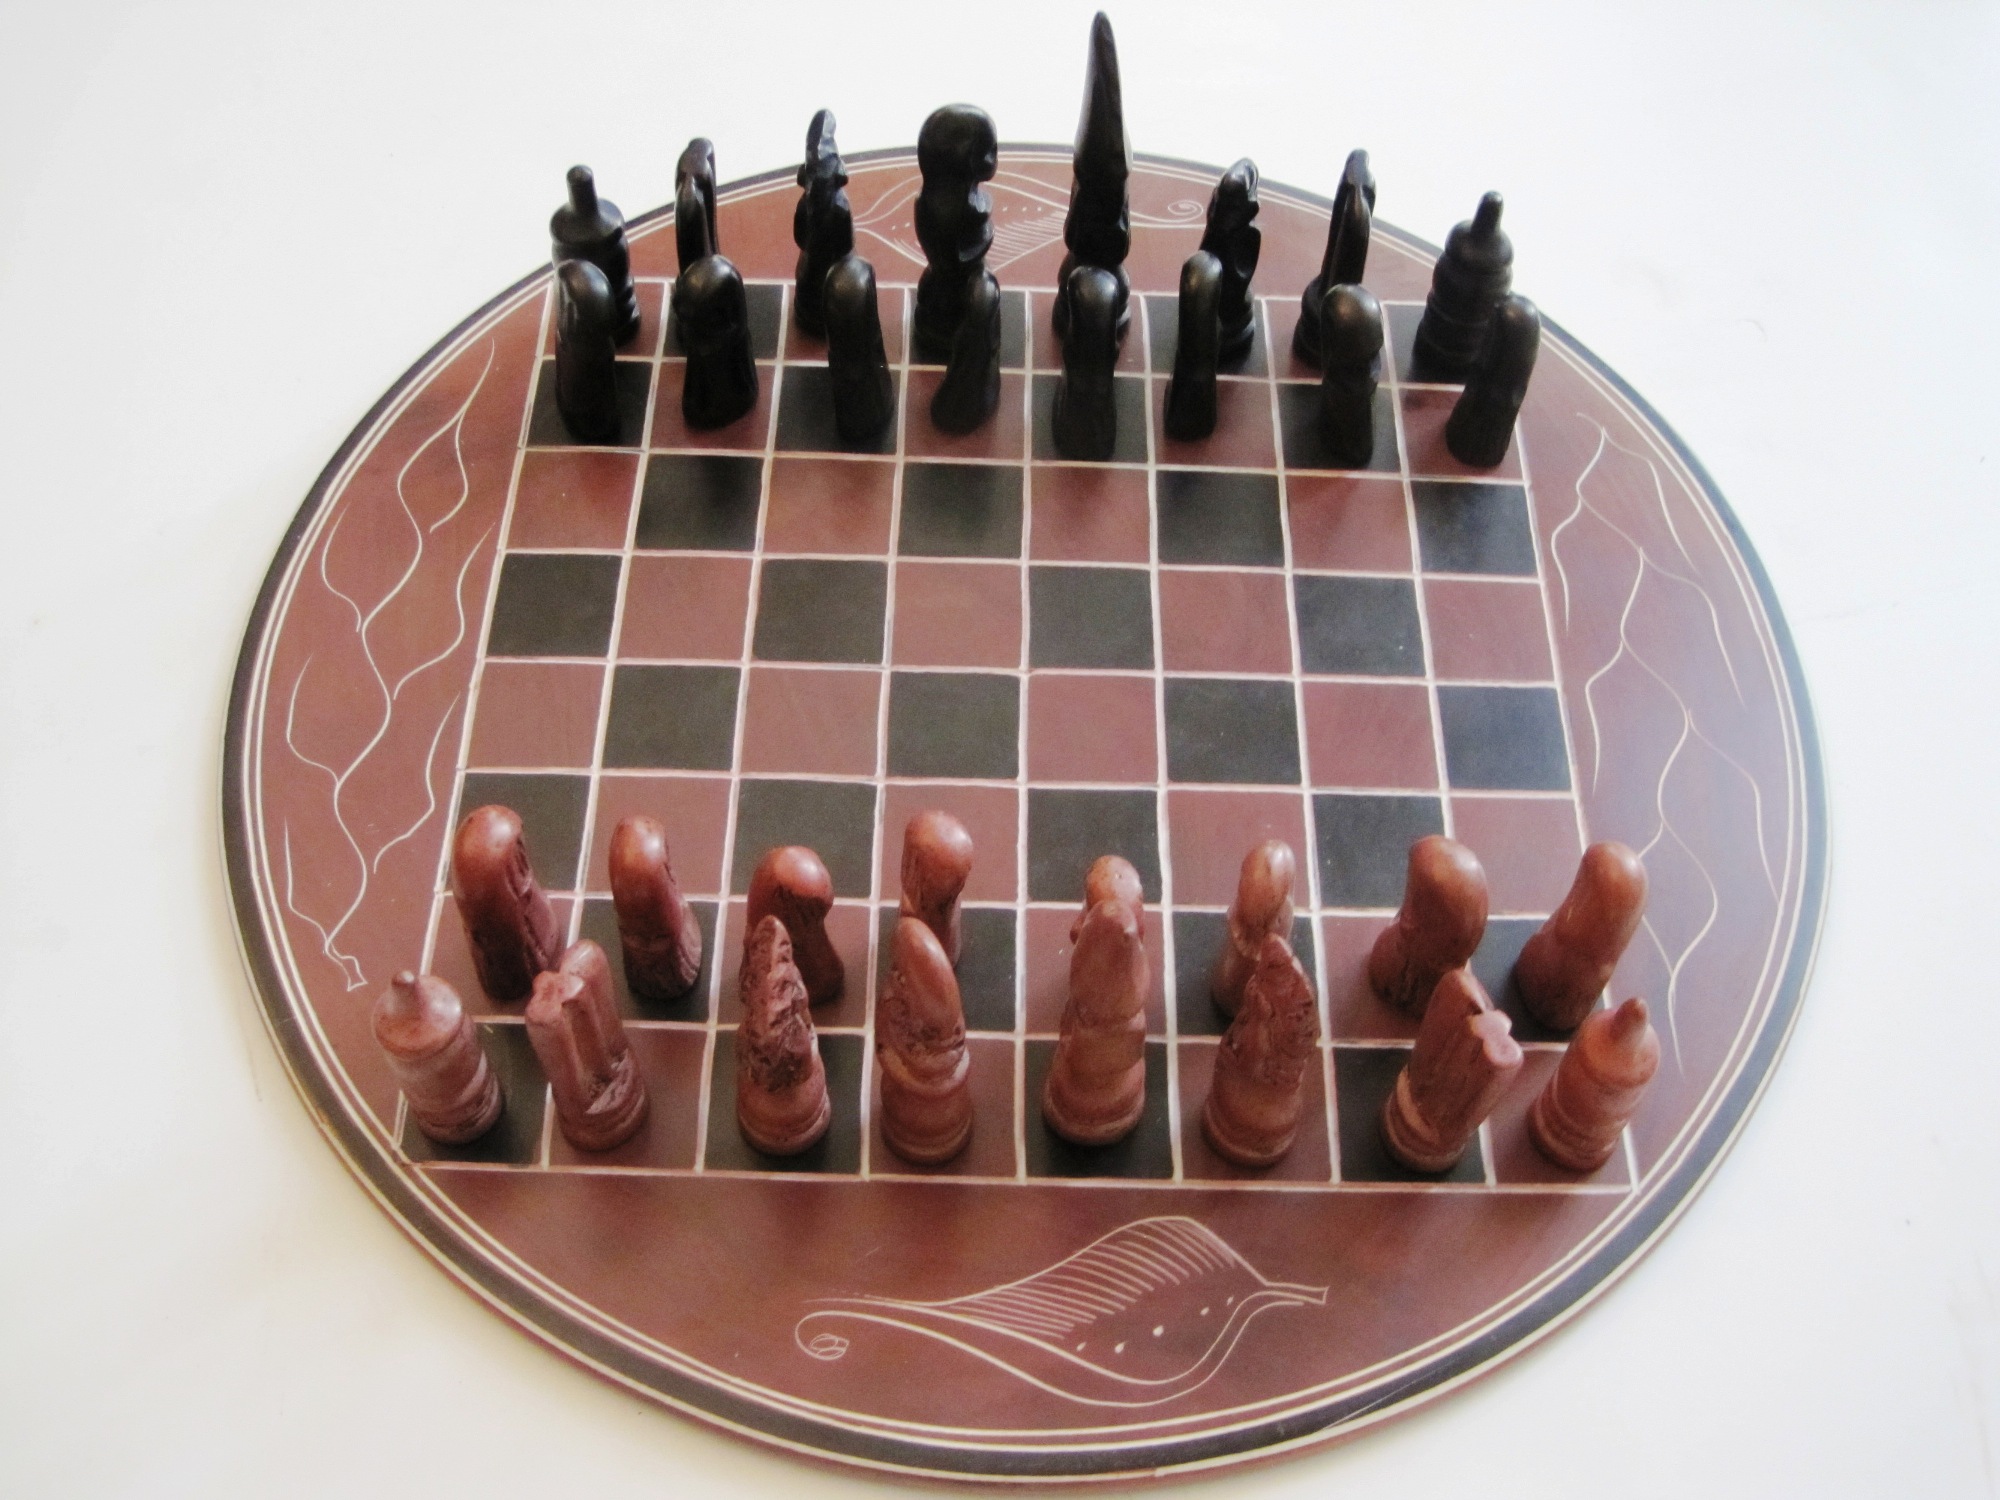 Kenya Soapstone Chess Set - Round 12"  #4